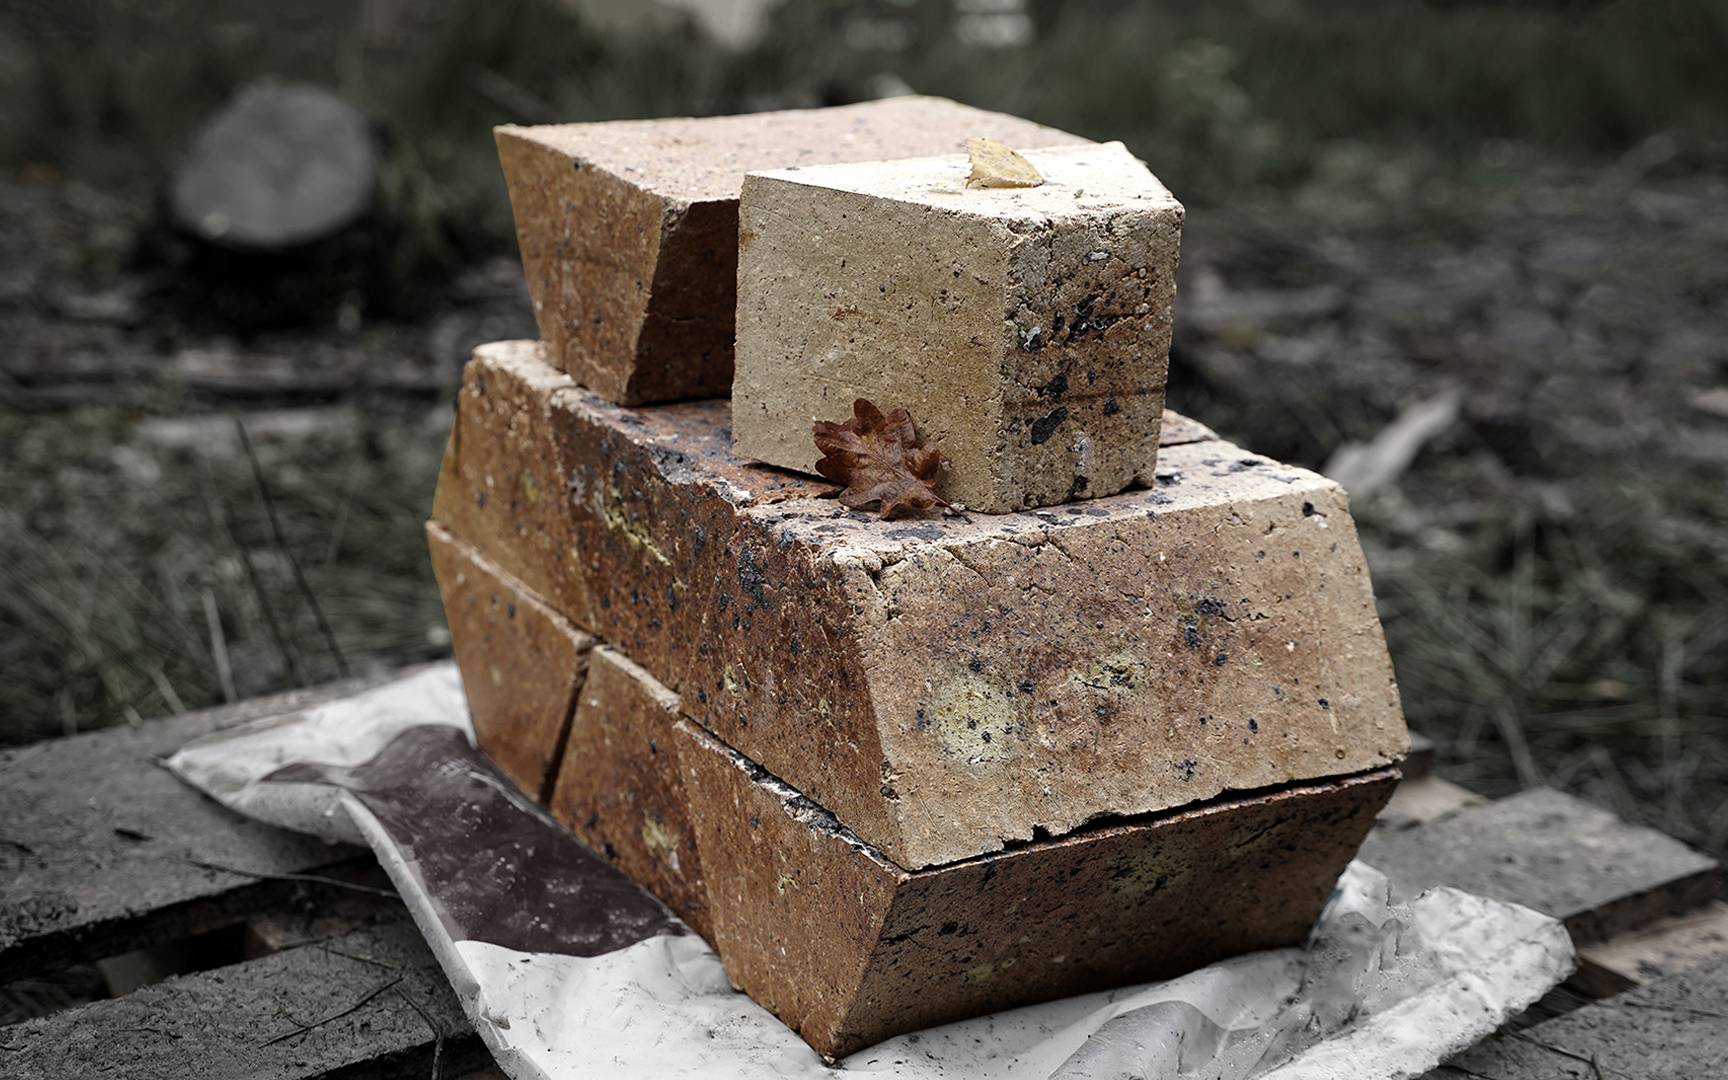 Image: Bespoke Bricks by Mengdi Mao